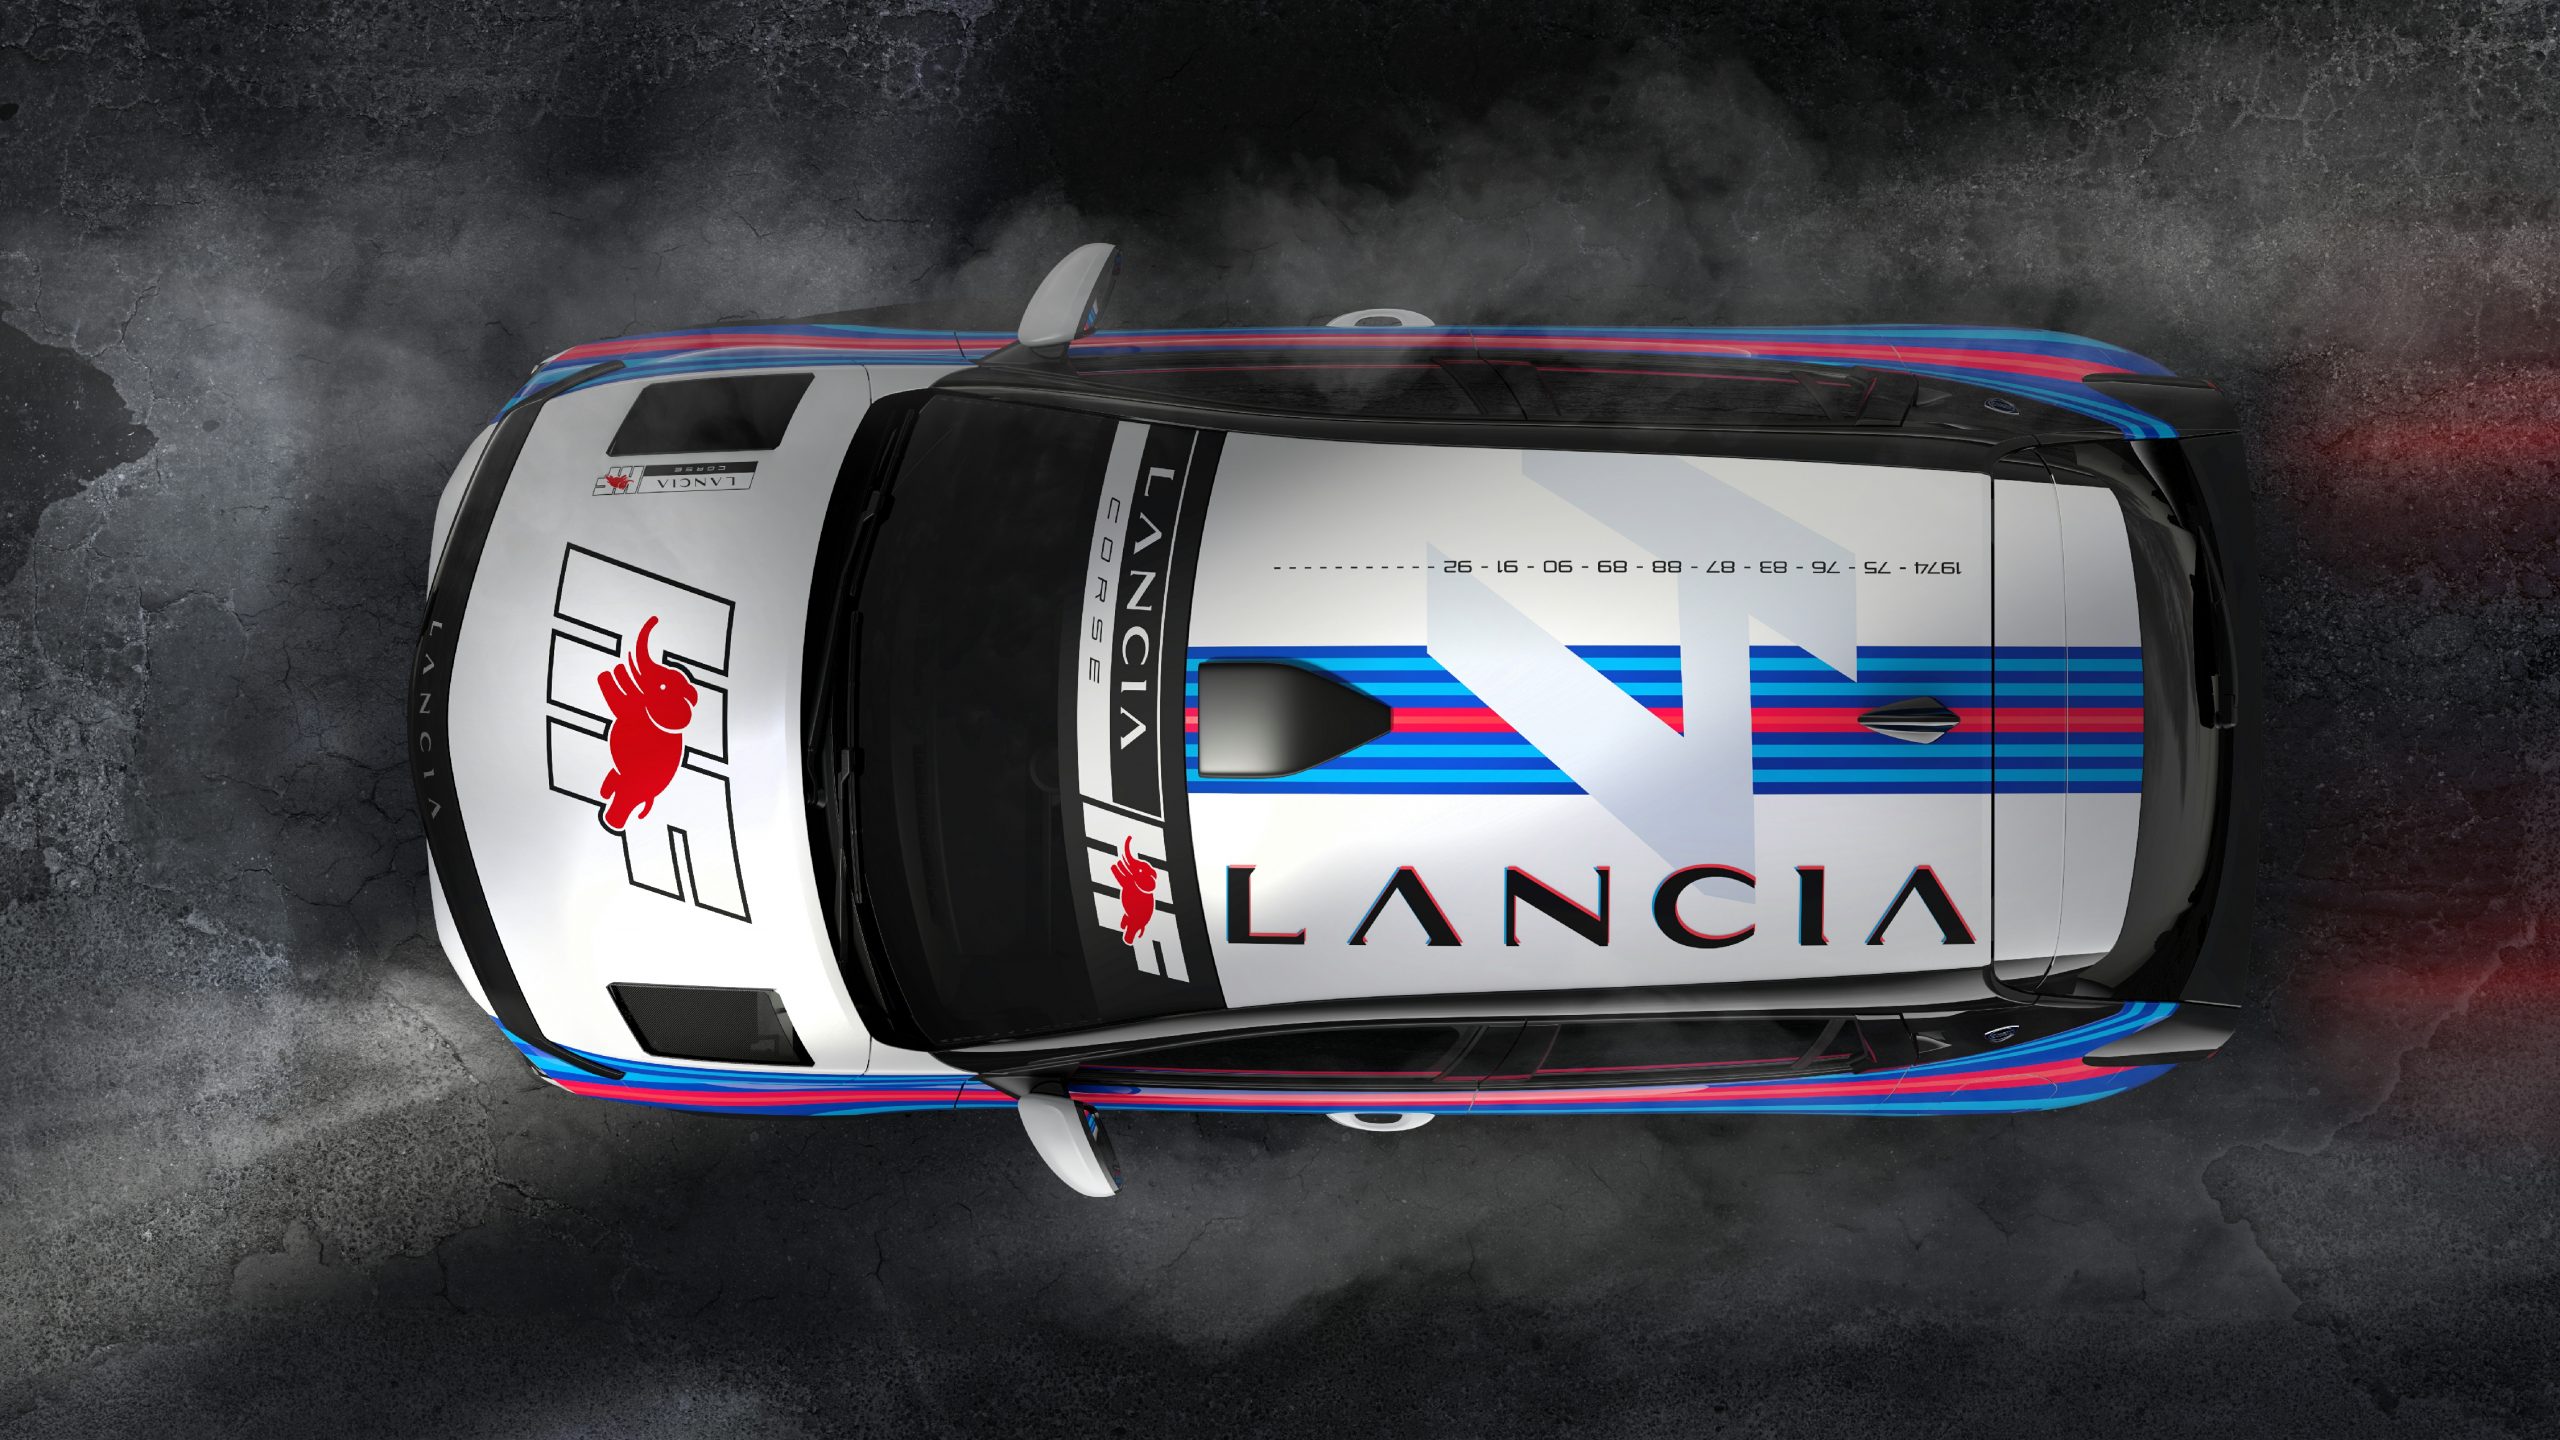 Miki Biasion explica por qué Lancia no ha regresado a la competición con un Rally2